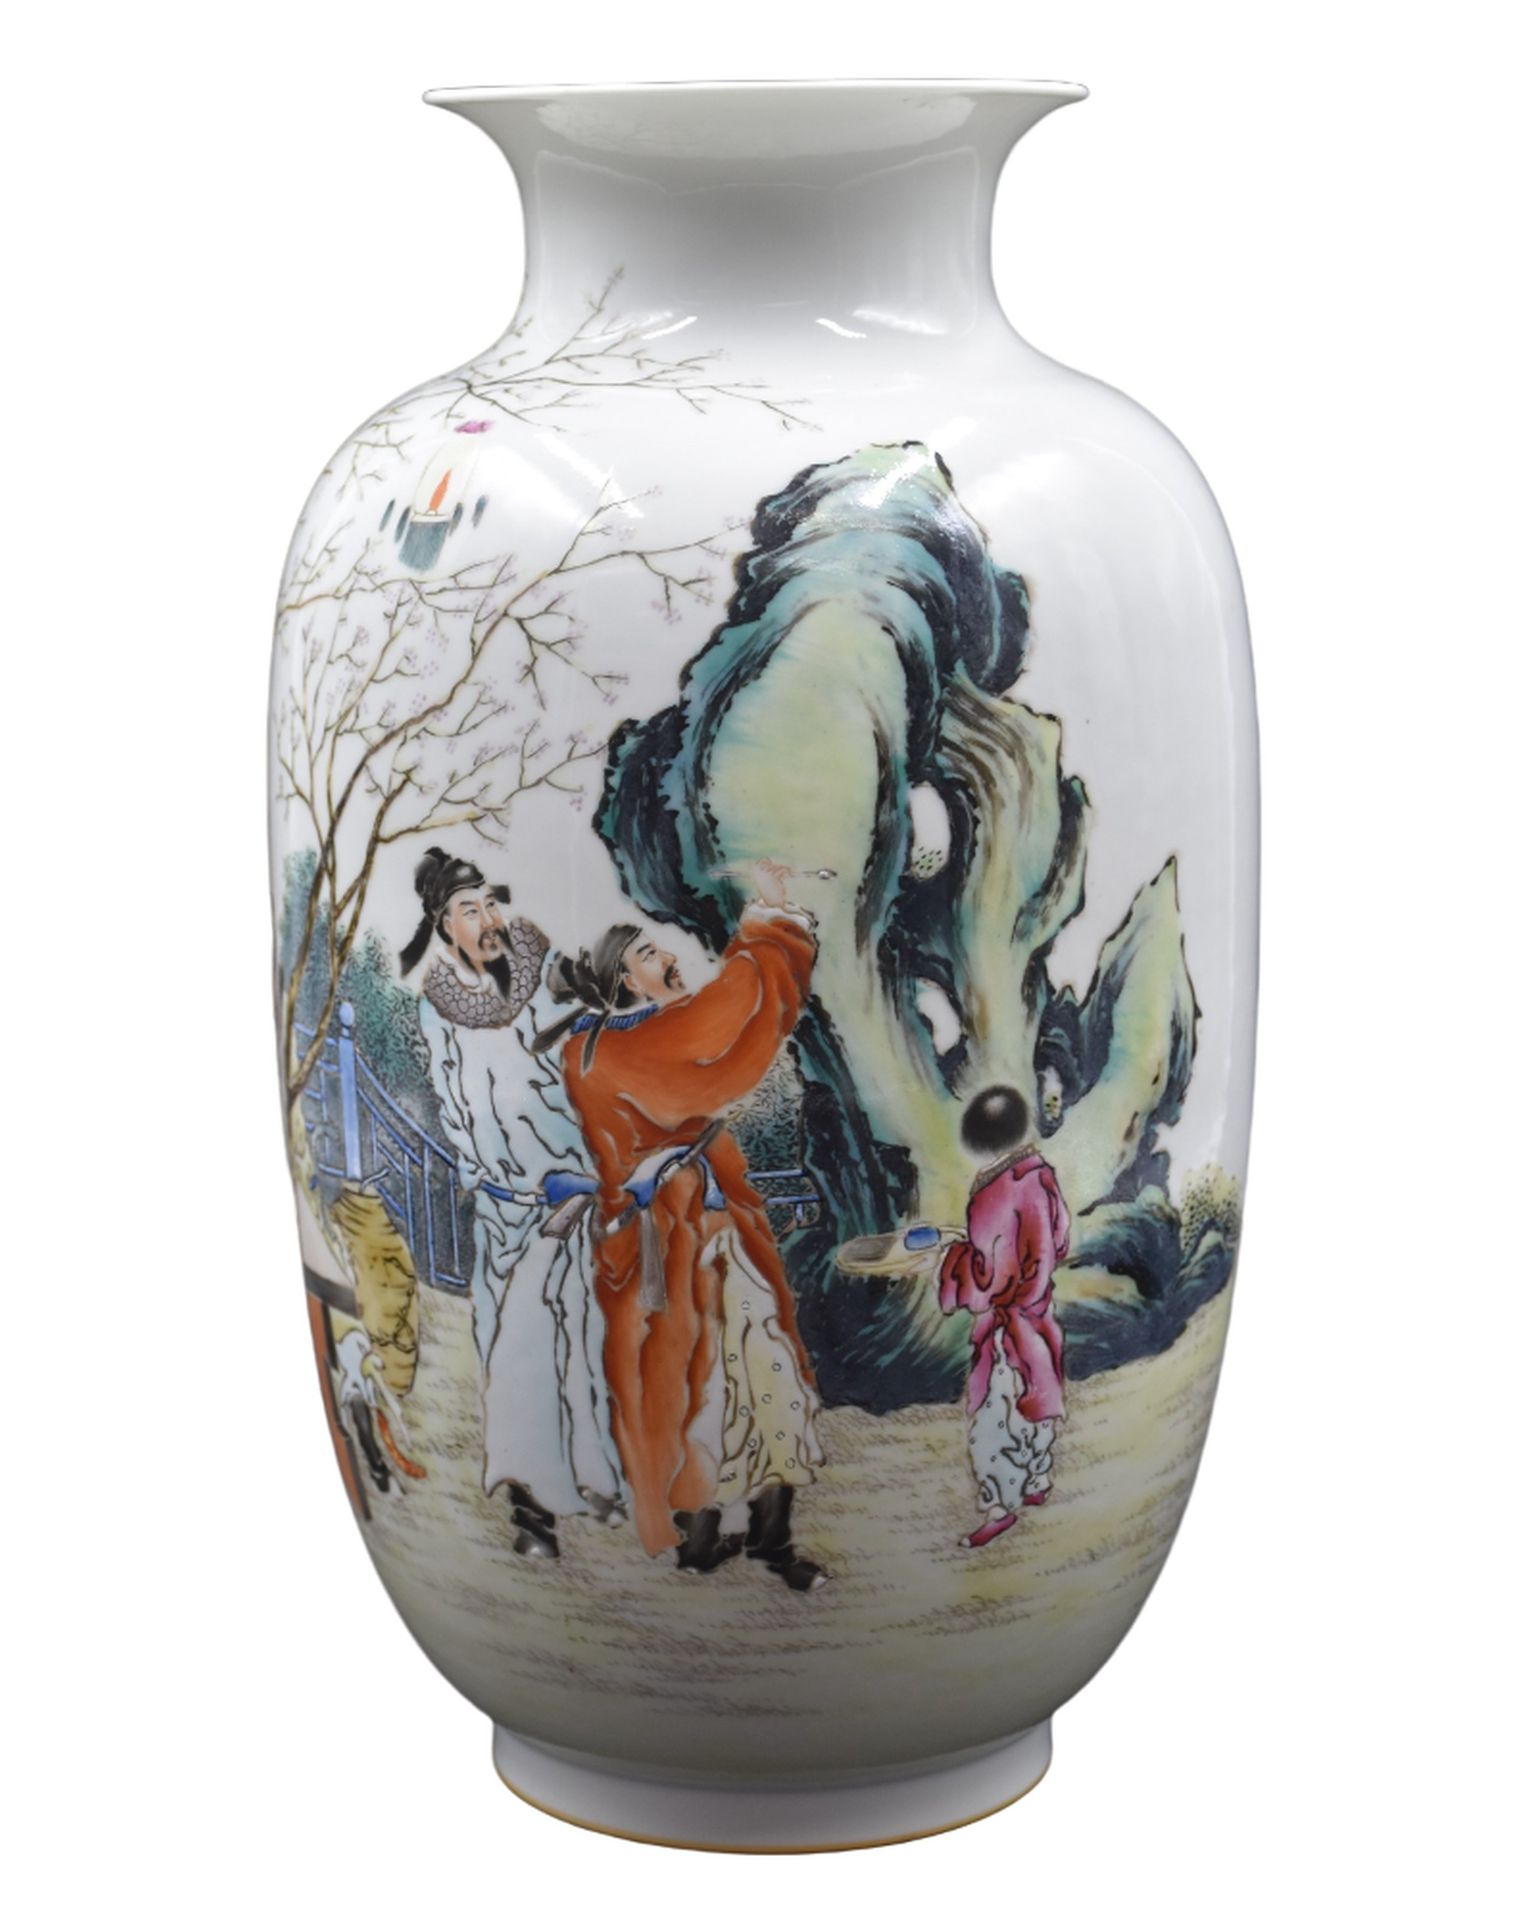 Null 中国瓷器花瓶上装饰有圣人在餐桌旁和圣人在学习绘画。共和国时期。高度：31.5厘米 

荷兰：在中国的门面房里，有两个男人和一个男人，他们都有自己的想法&hellip;